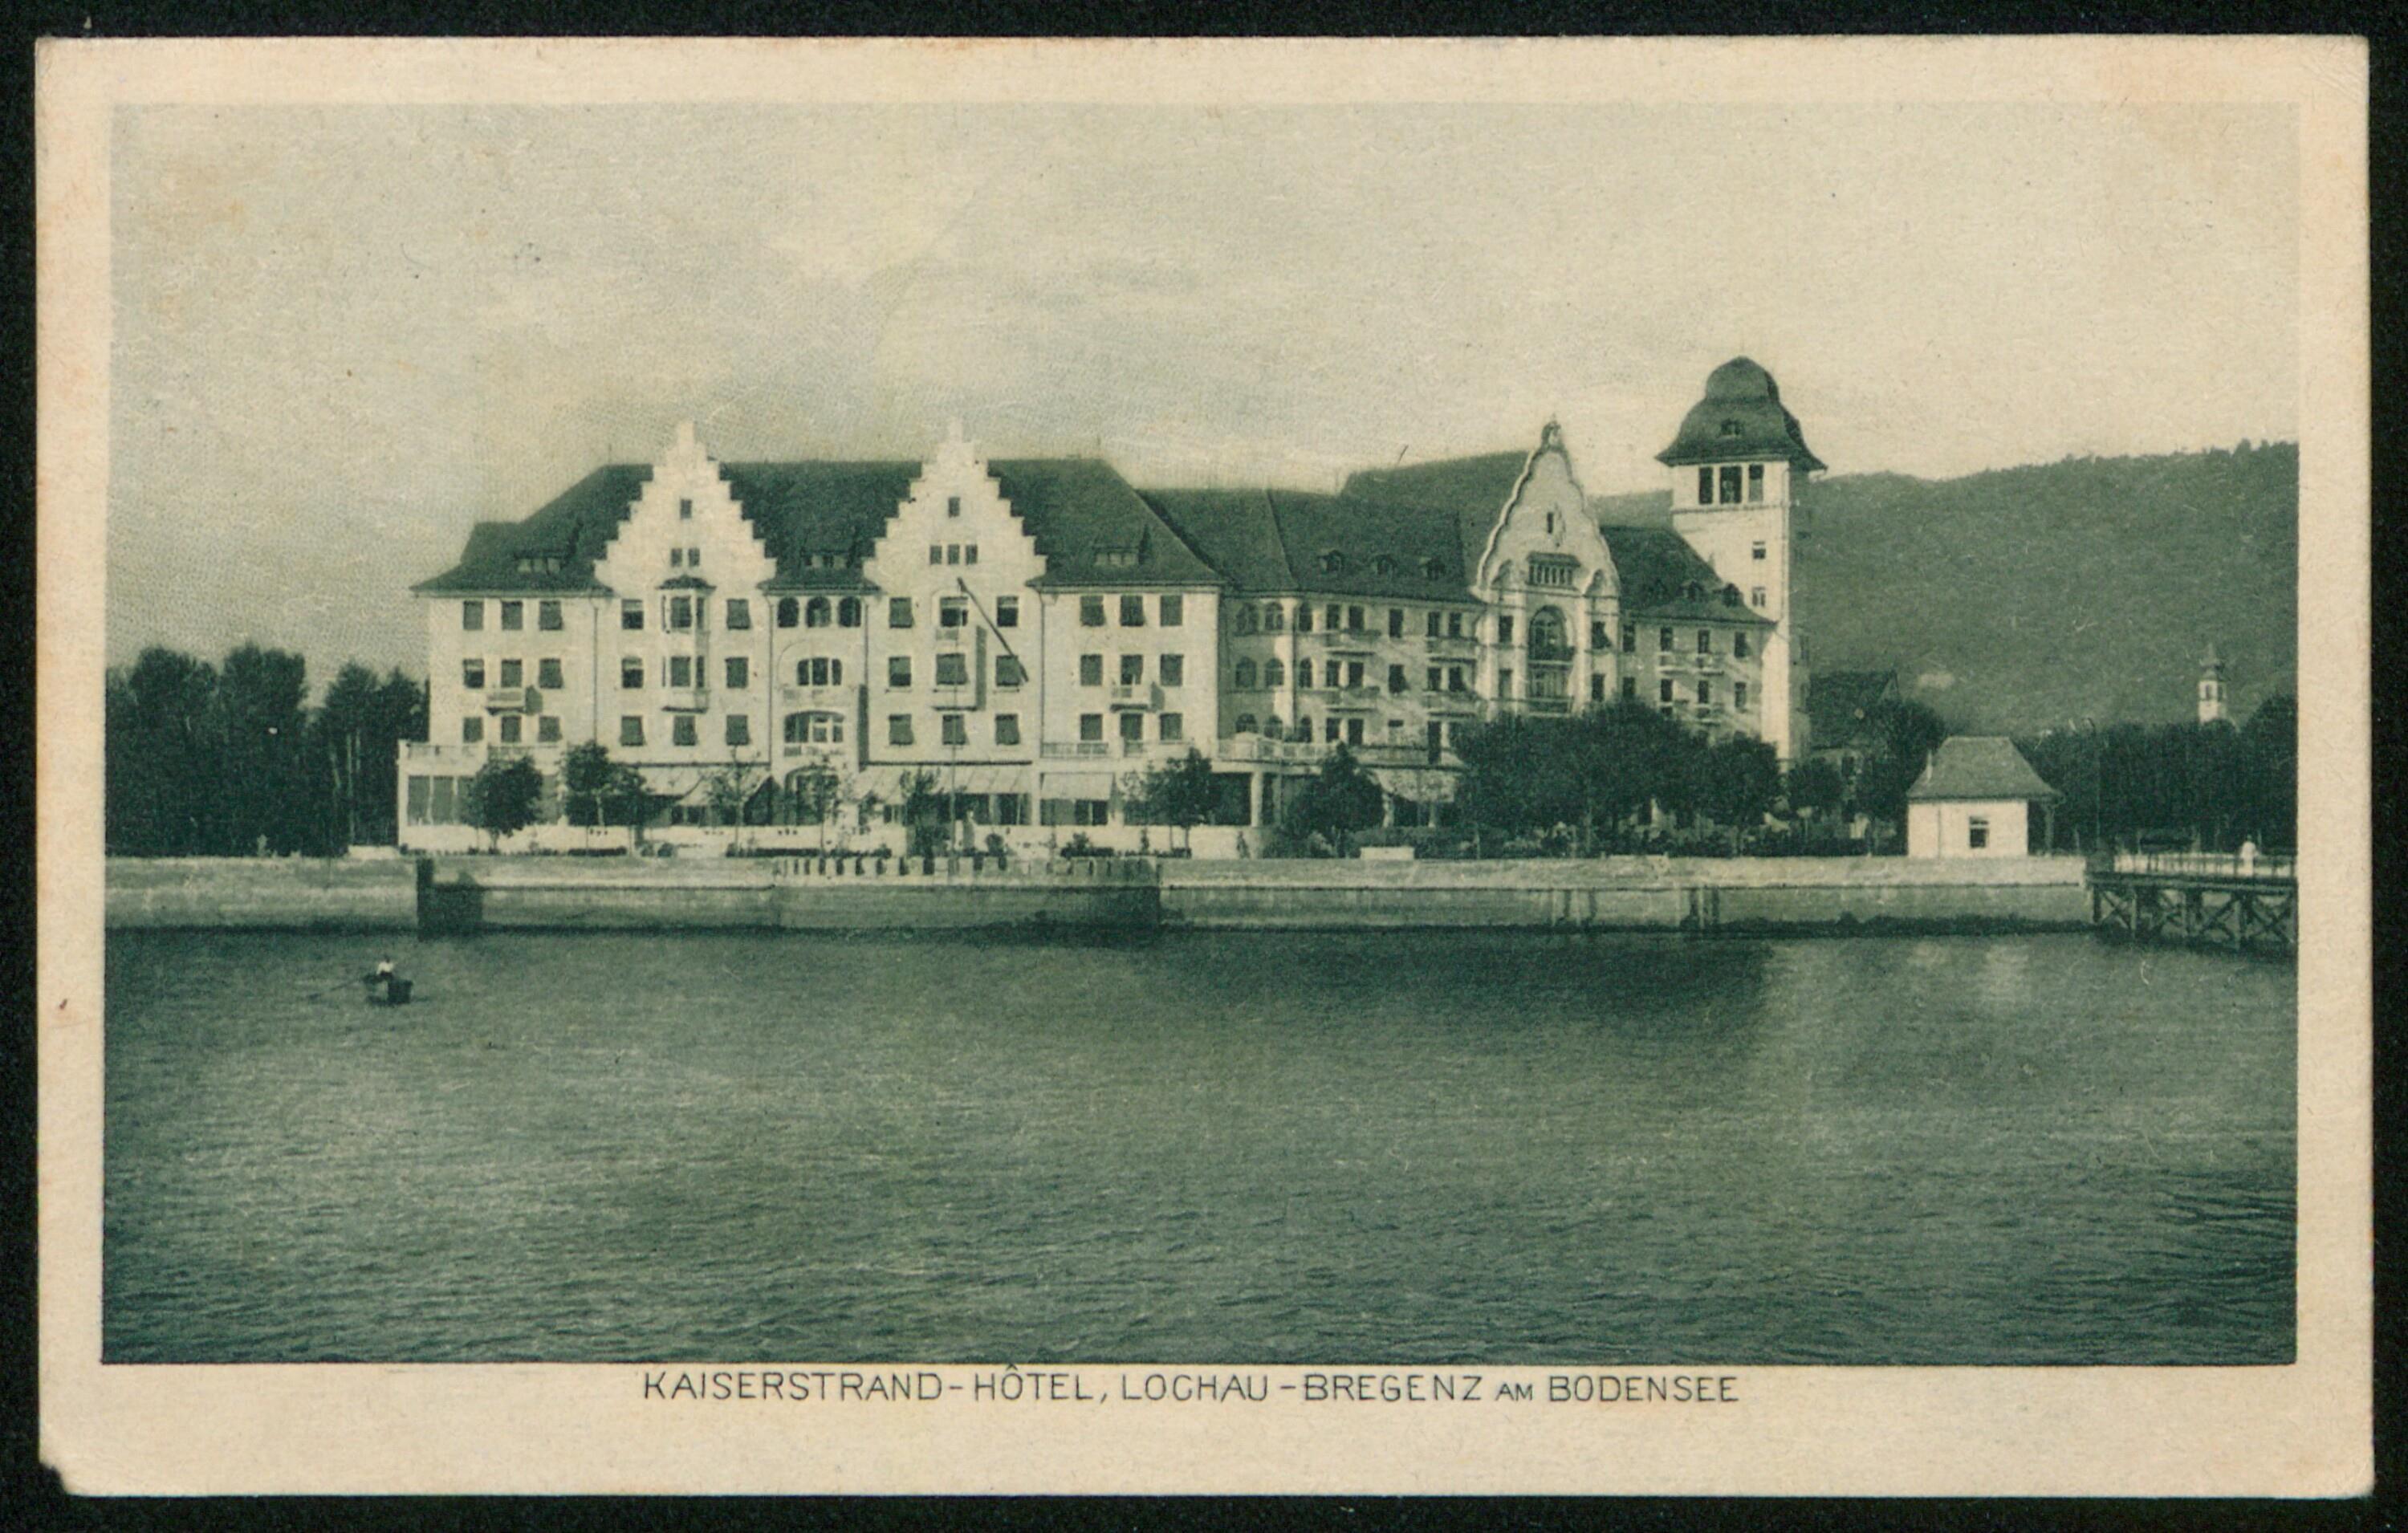 Kaiserstrand-Hôtel, Lochau-Bregenz am Bodensee></div>


    <hr>
    <div class=